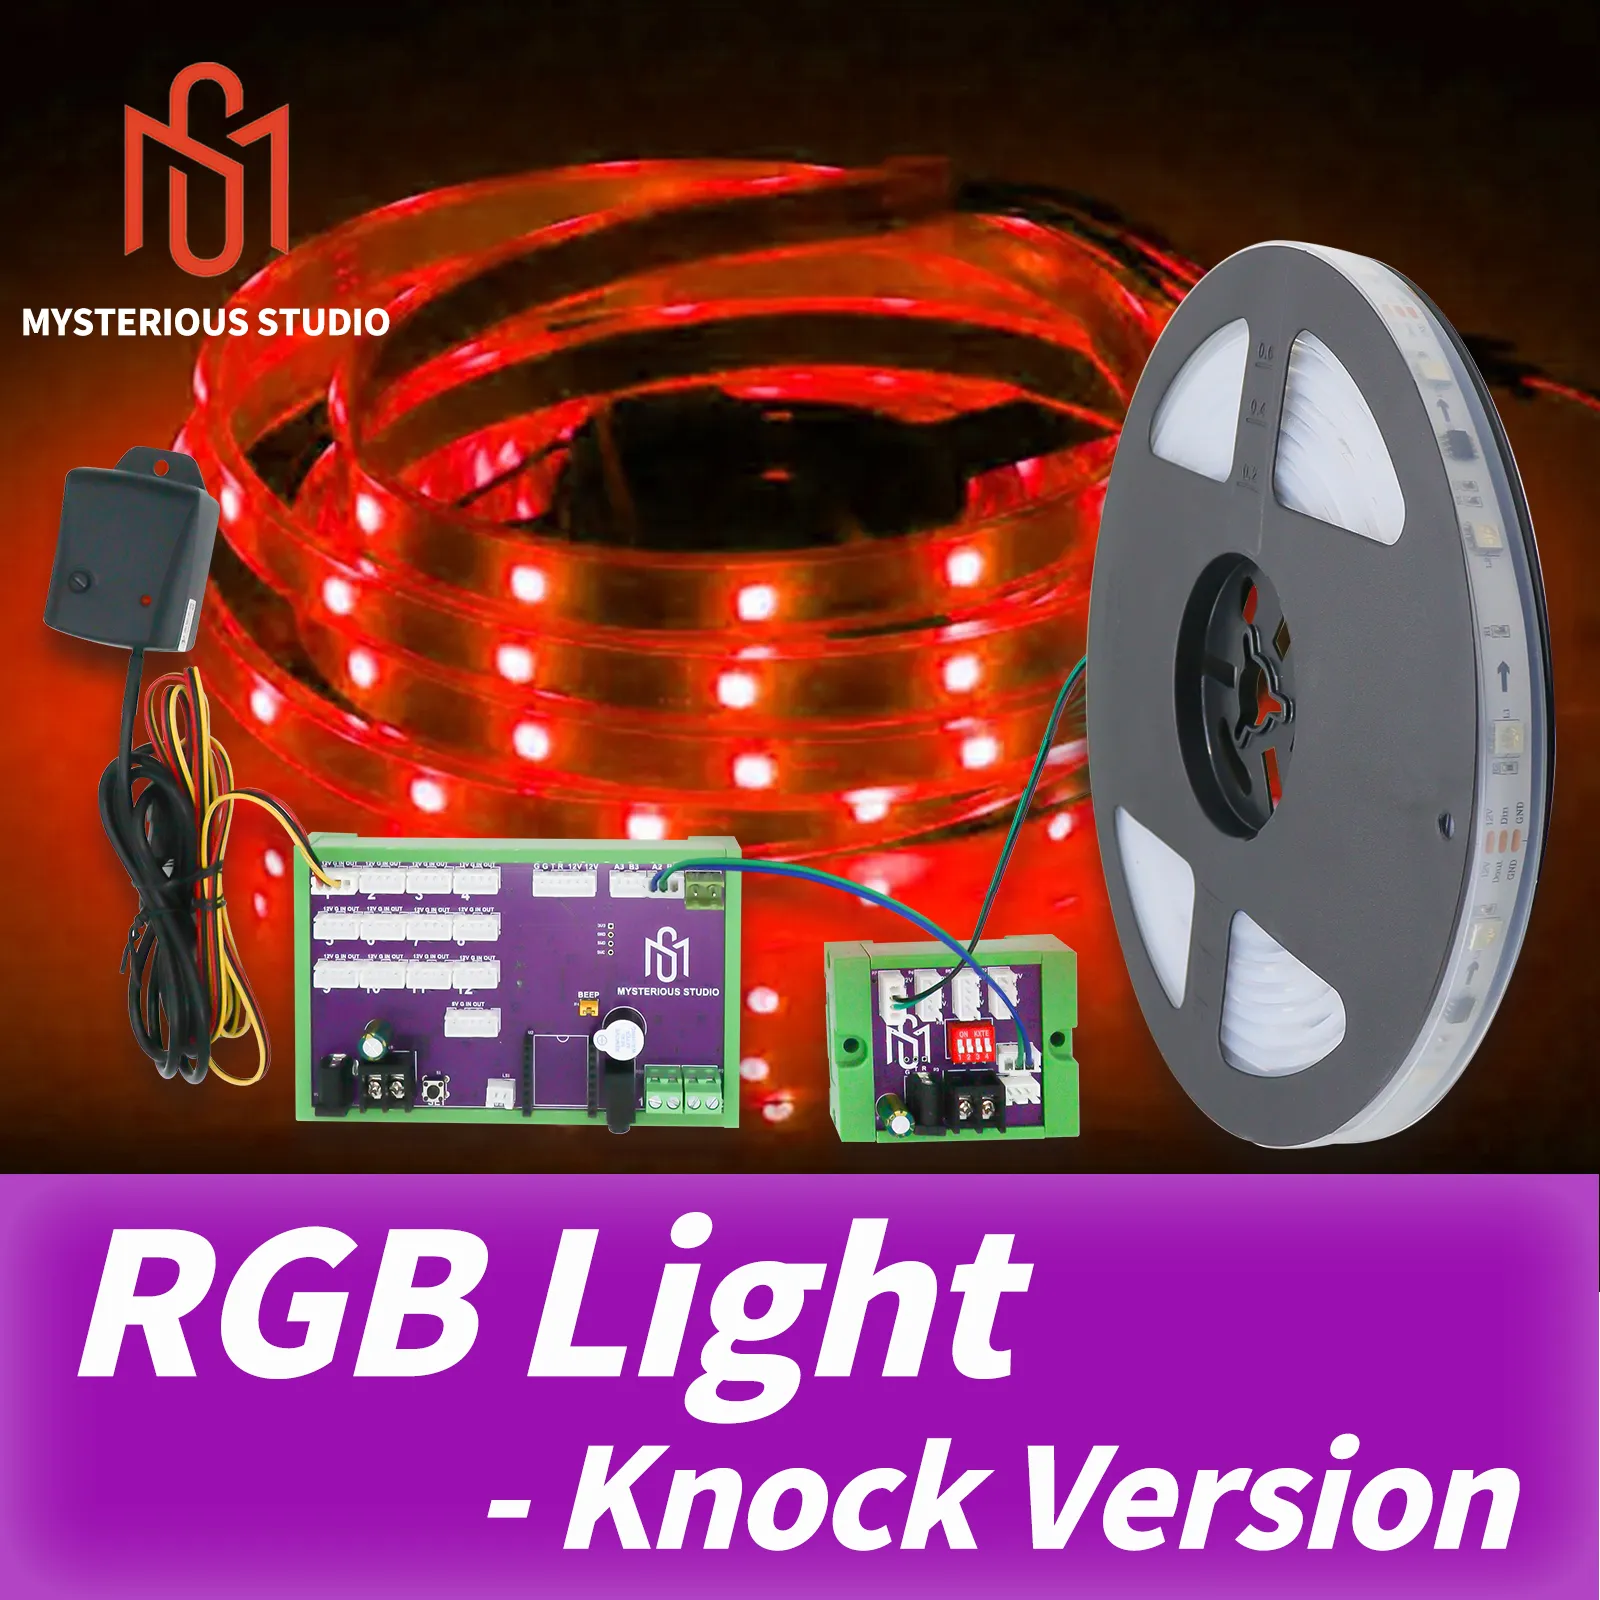 Gizemli stüdyo kaçış odası çalma kemeri pervane titreşim sensörü RGB LED şeridini aydınlatmak için vurma sürümünün kilidini açmak için